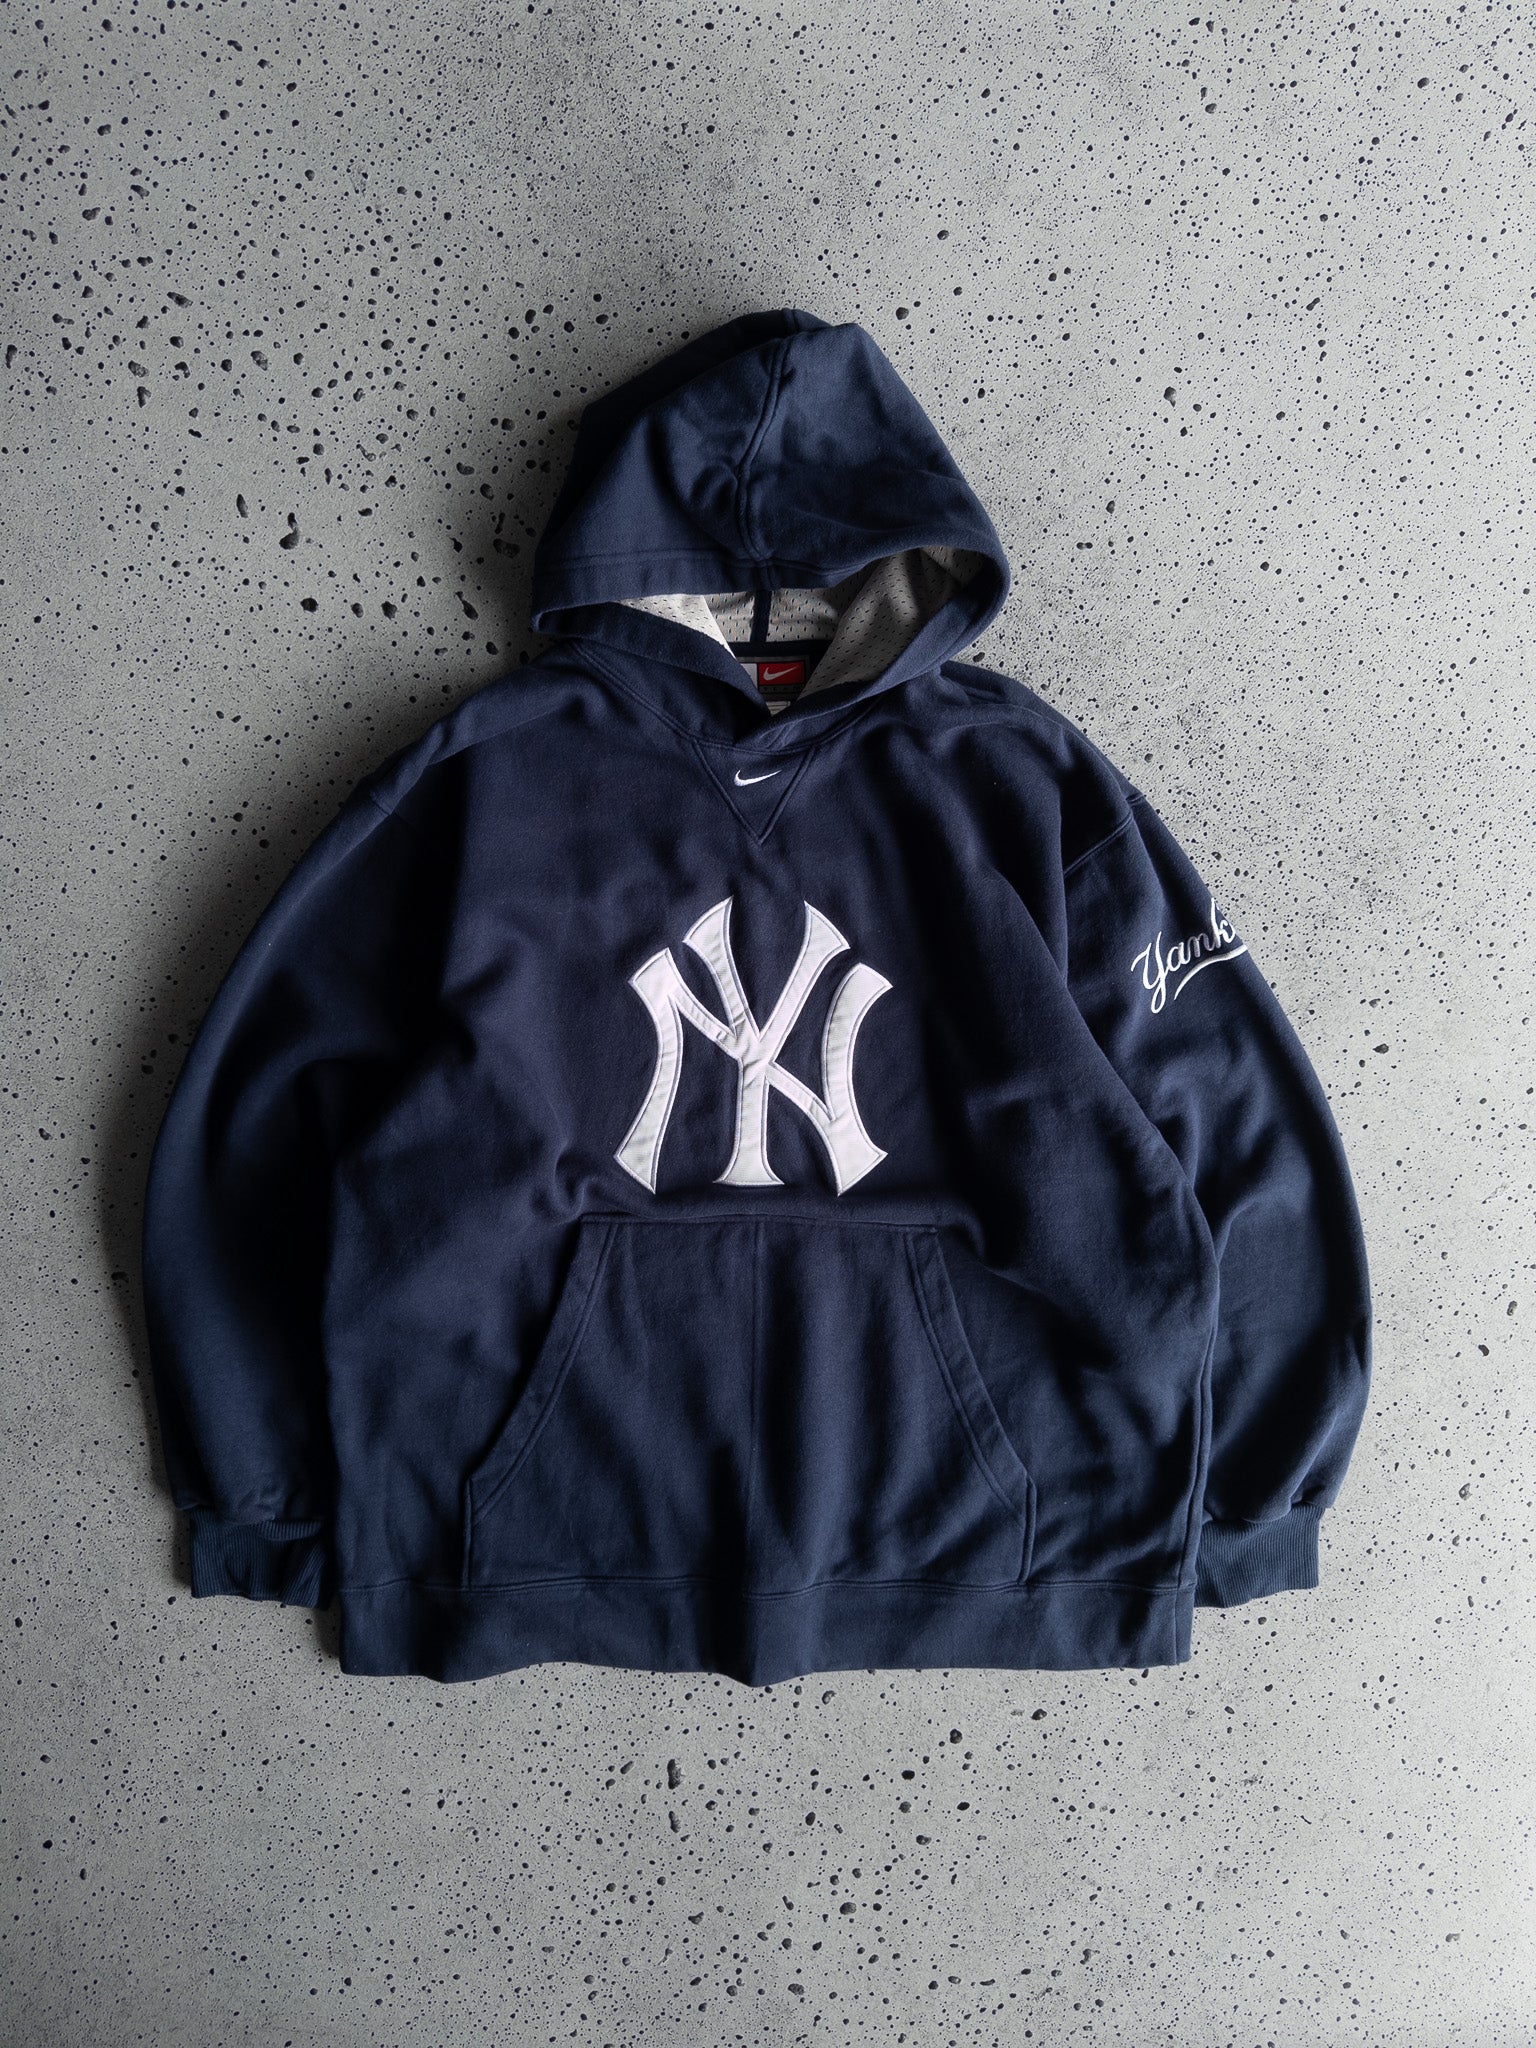 Vintage New York Yankees Nike Hoodie (XL)